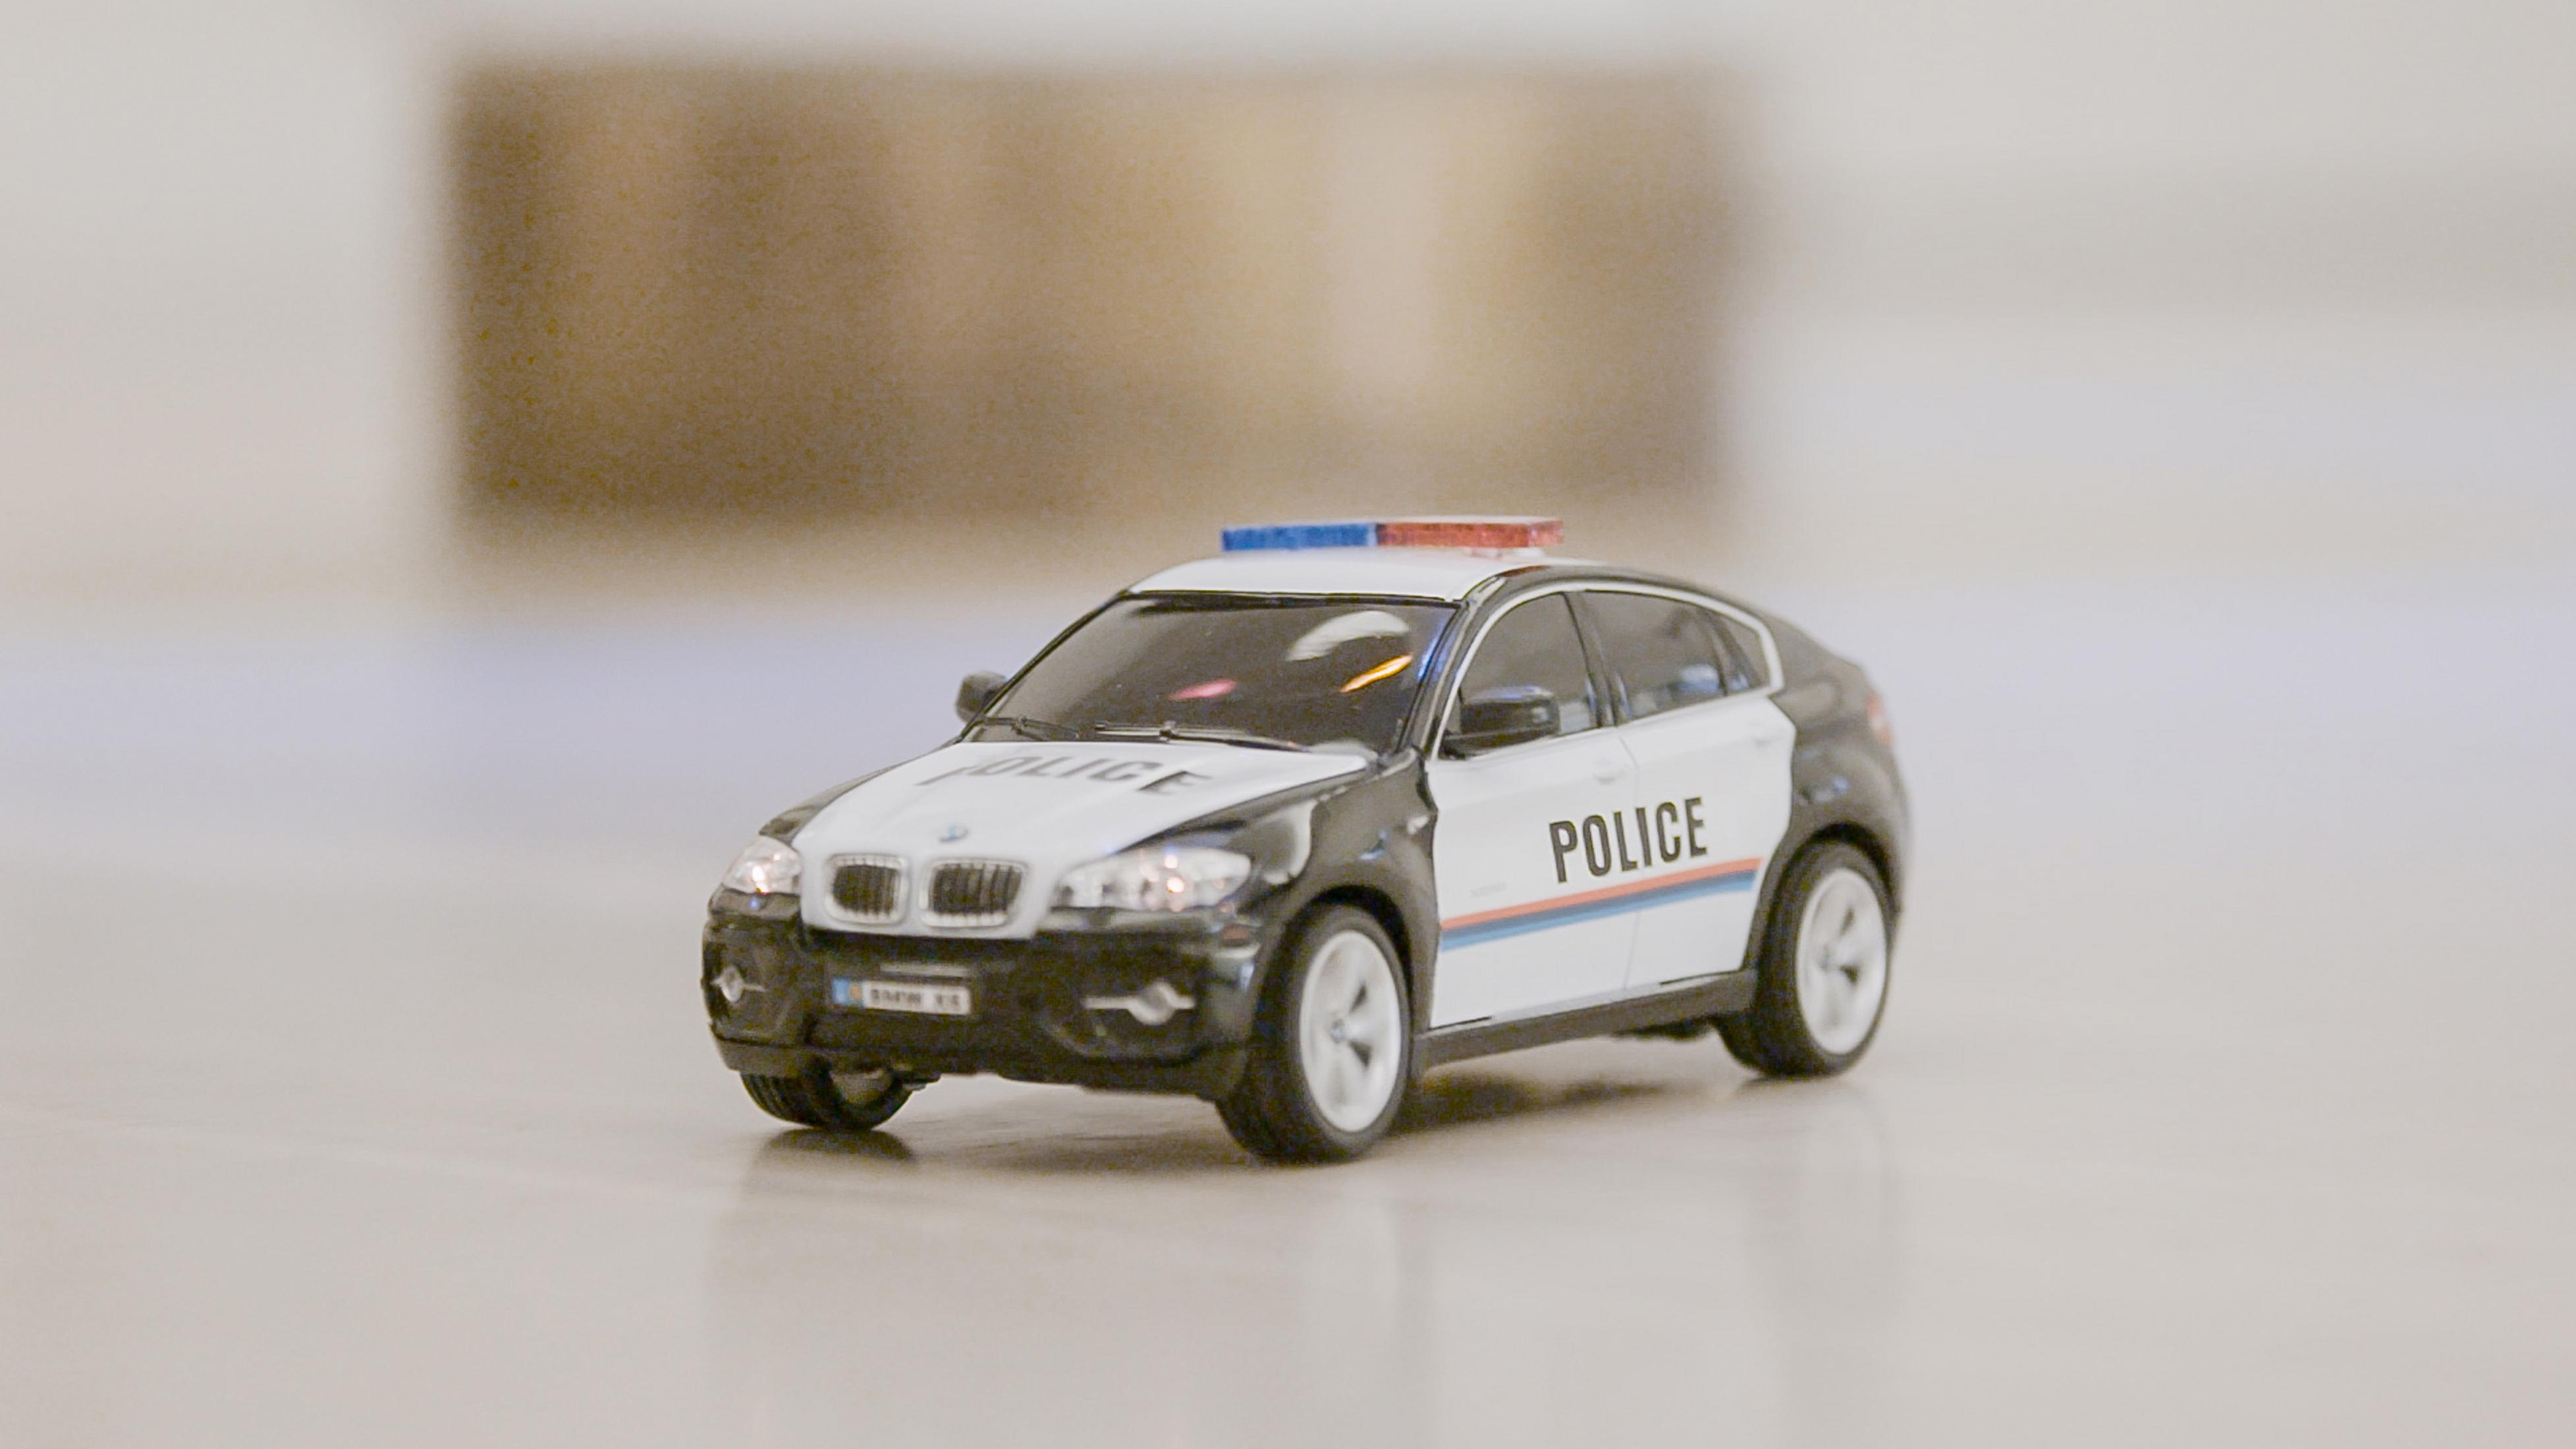 REVELL 24655 X6 R/C BMW Schwarz/Weiß Spielzeugfahrzeug, POLICE